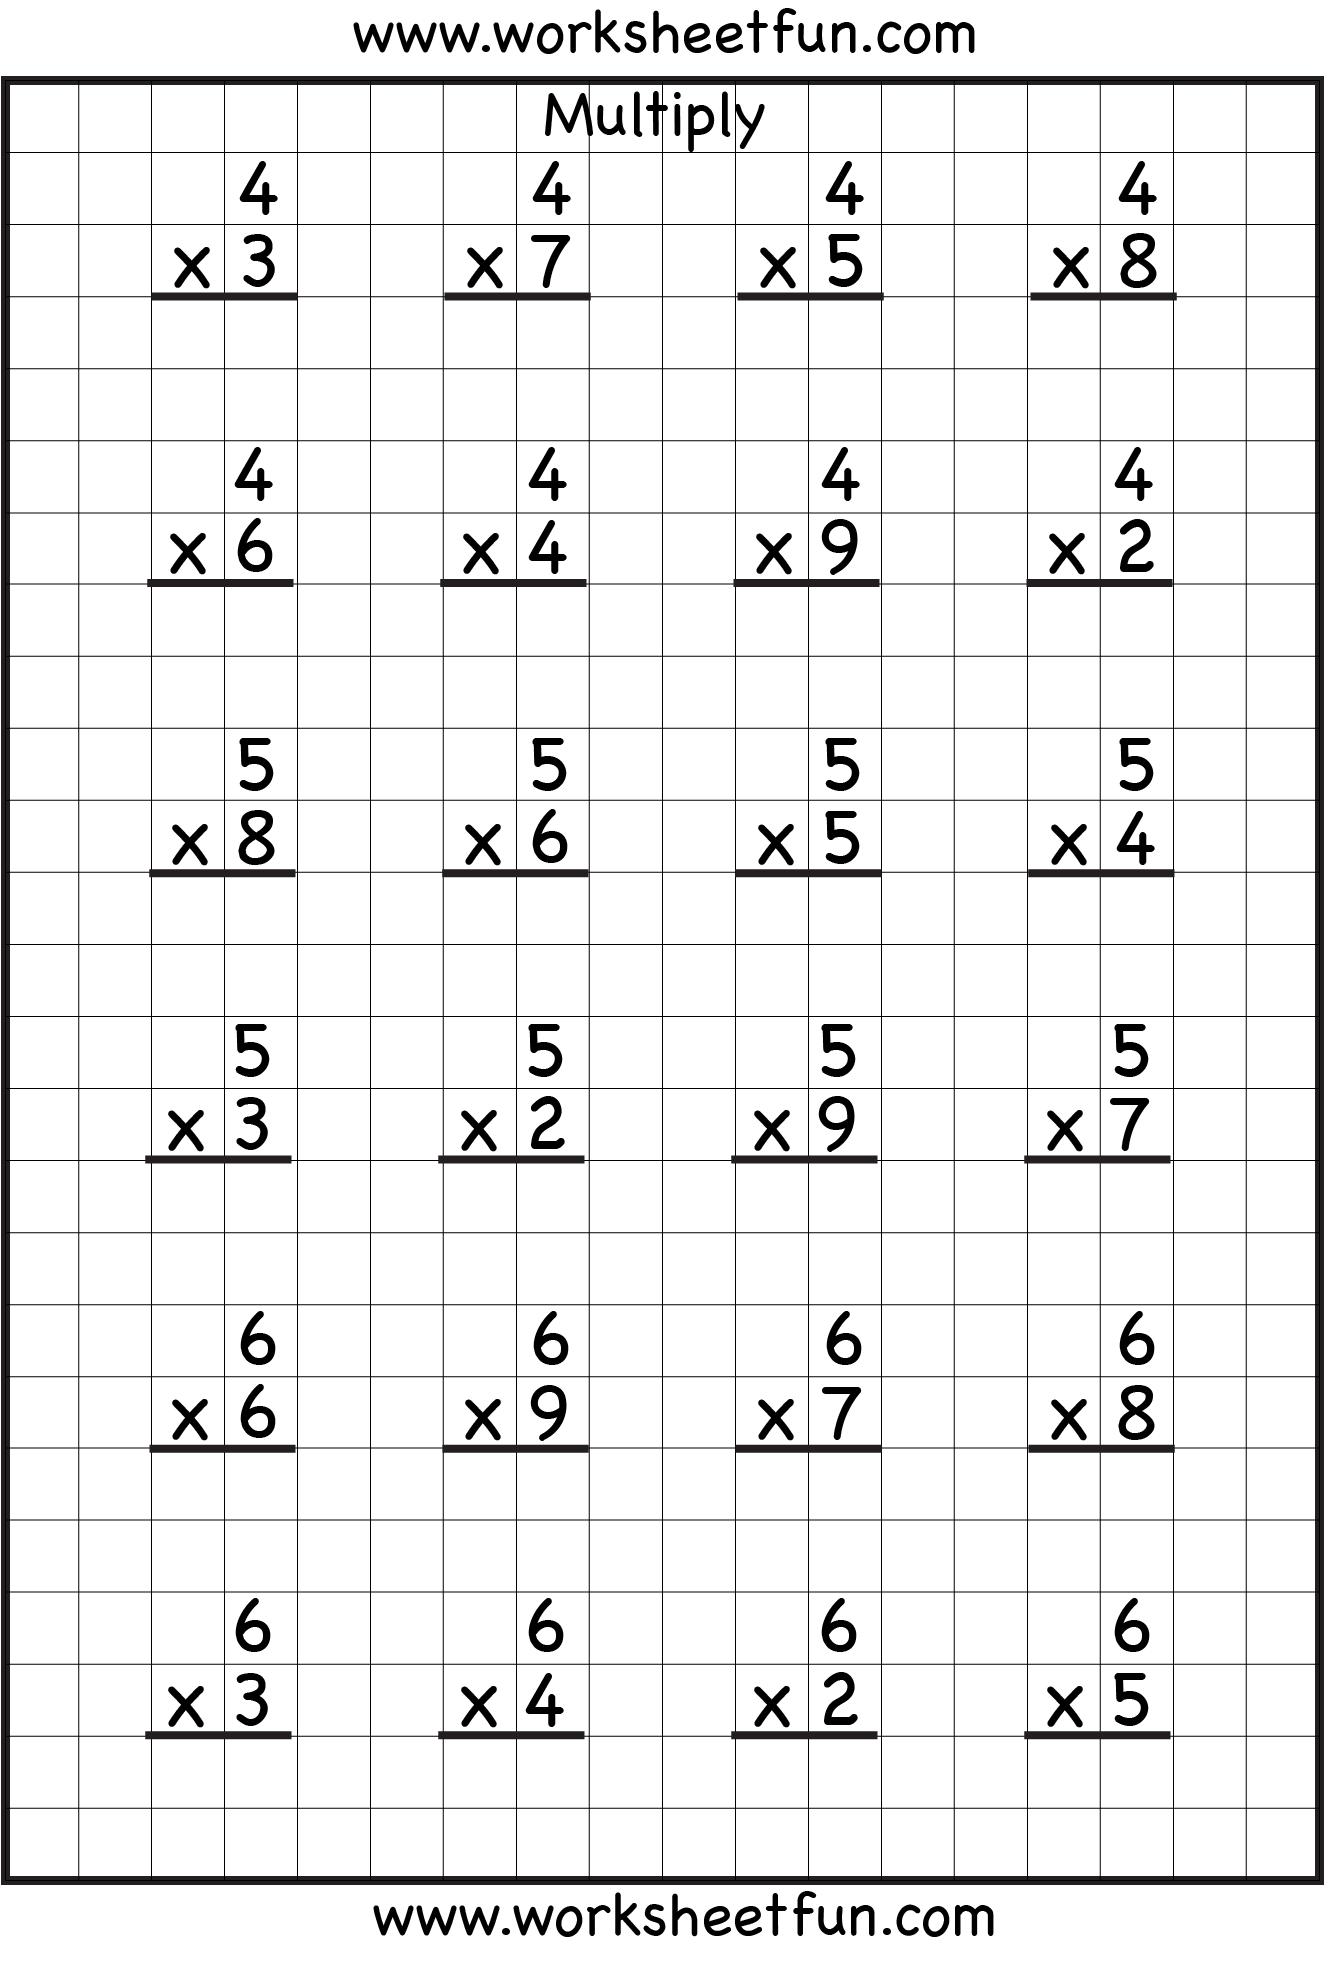 single-digit-multiplication-8-worksheets-free-printable-worksheets-worksheetfun